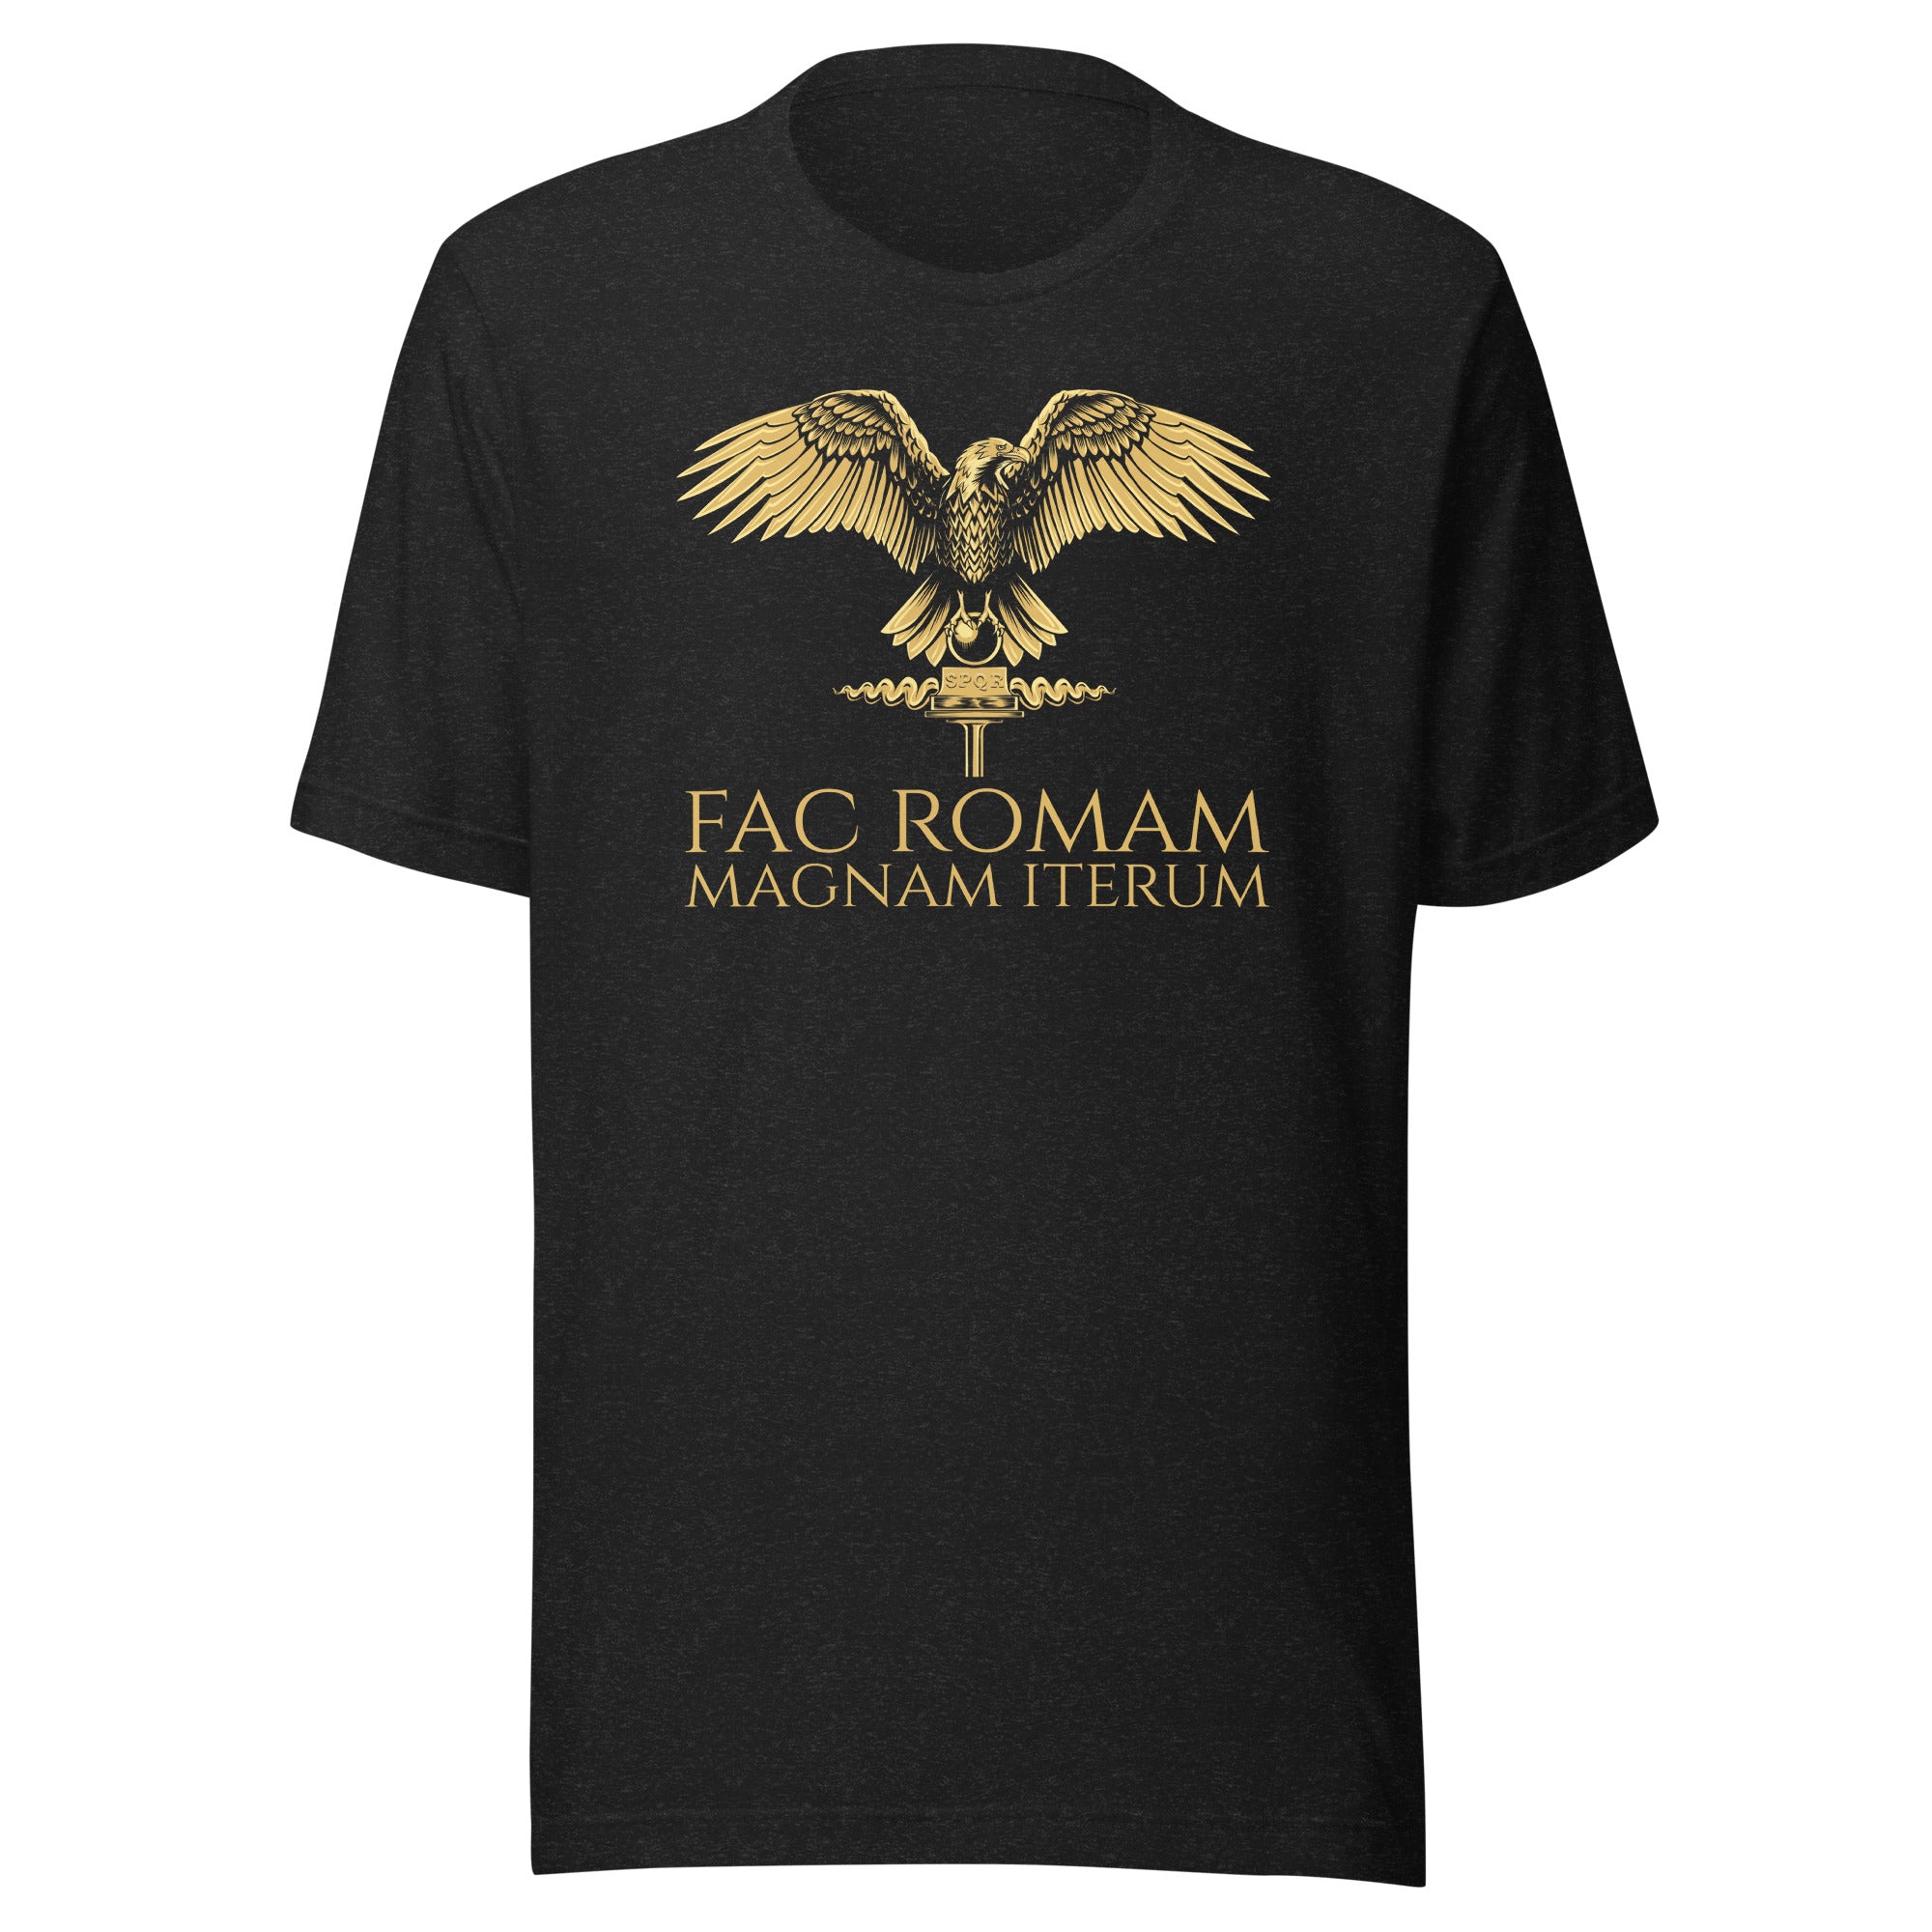 Fac Romam Magnam Iterum - Make Rome Great Again - Latin Language Unisex T-Shirt